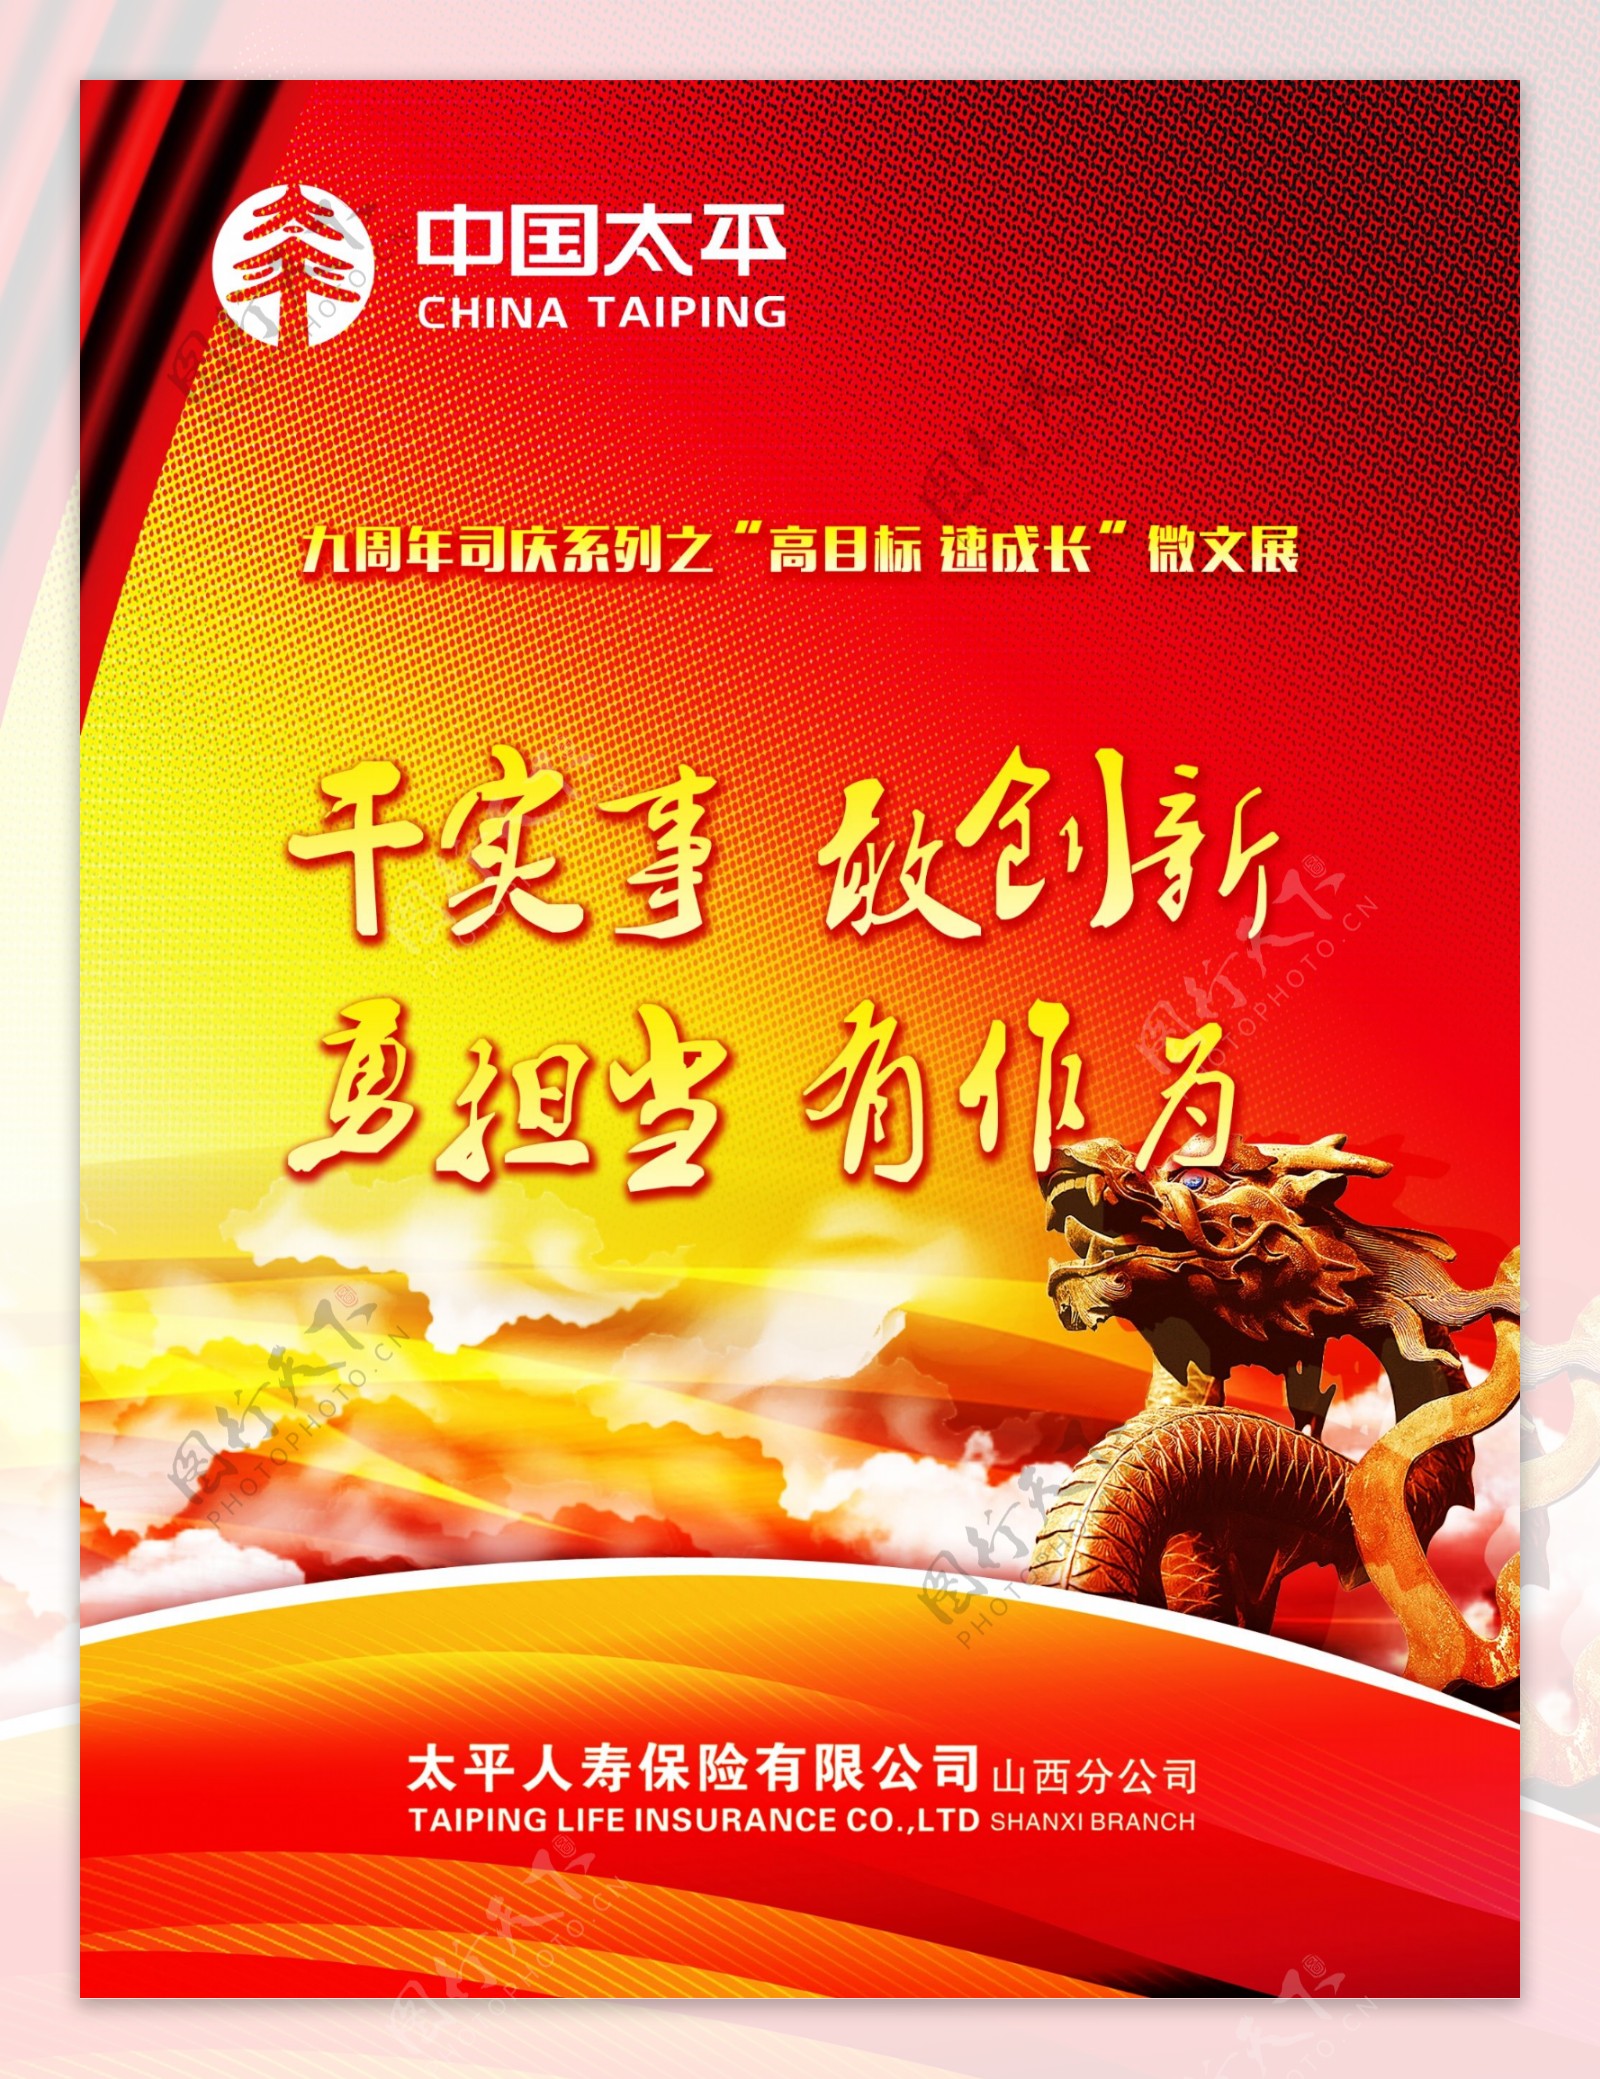 中国太平周年庆